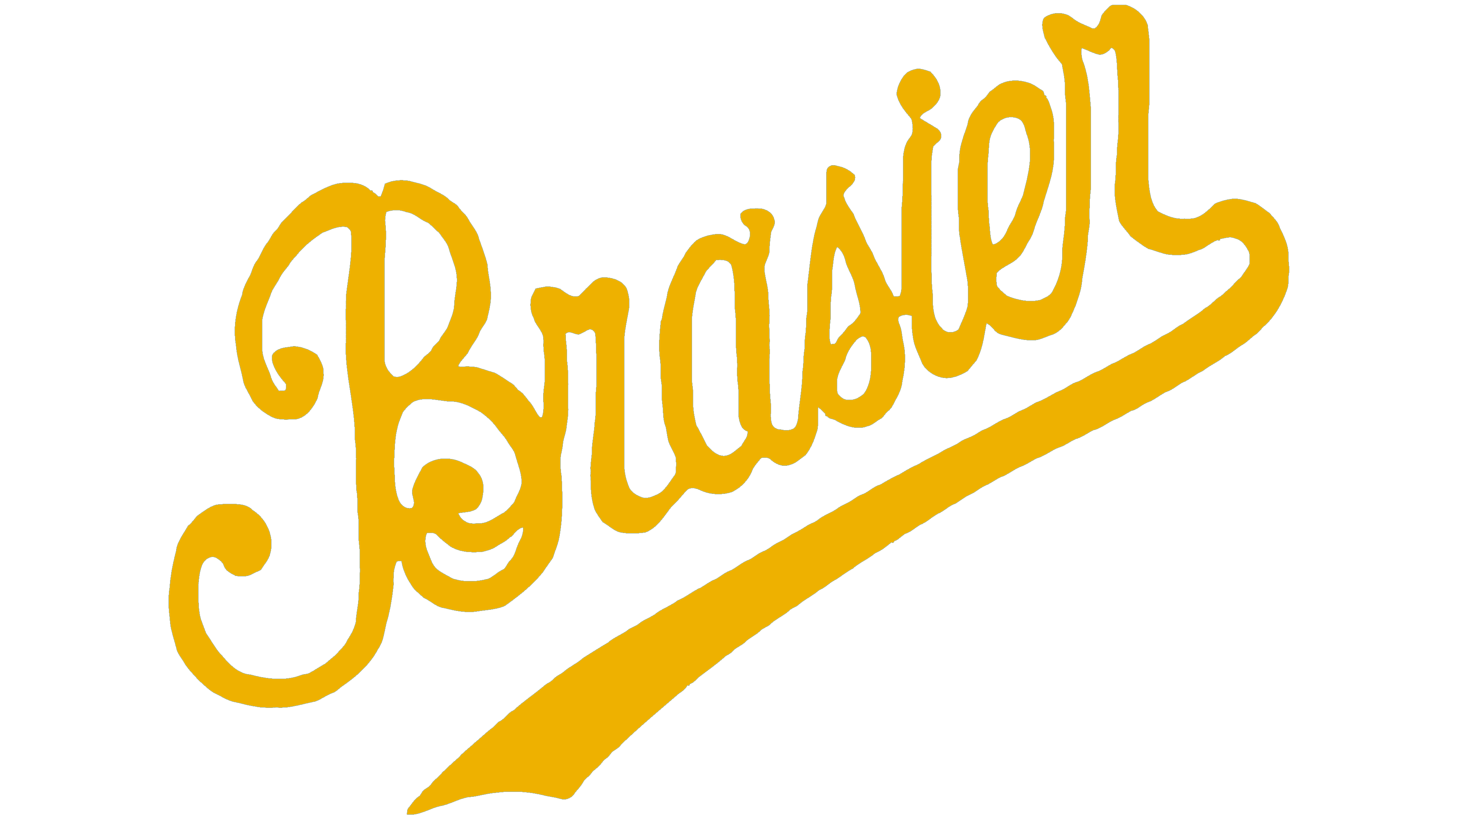 Brasier sign